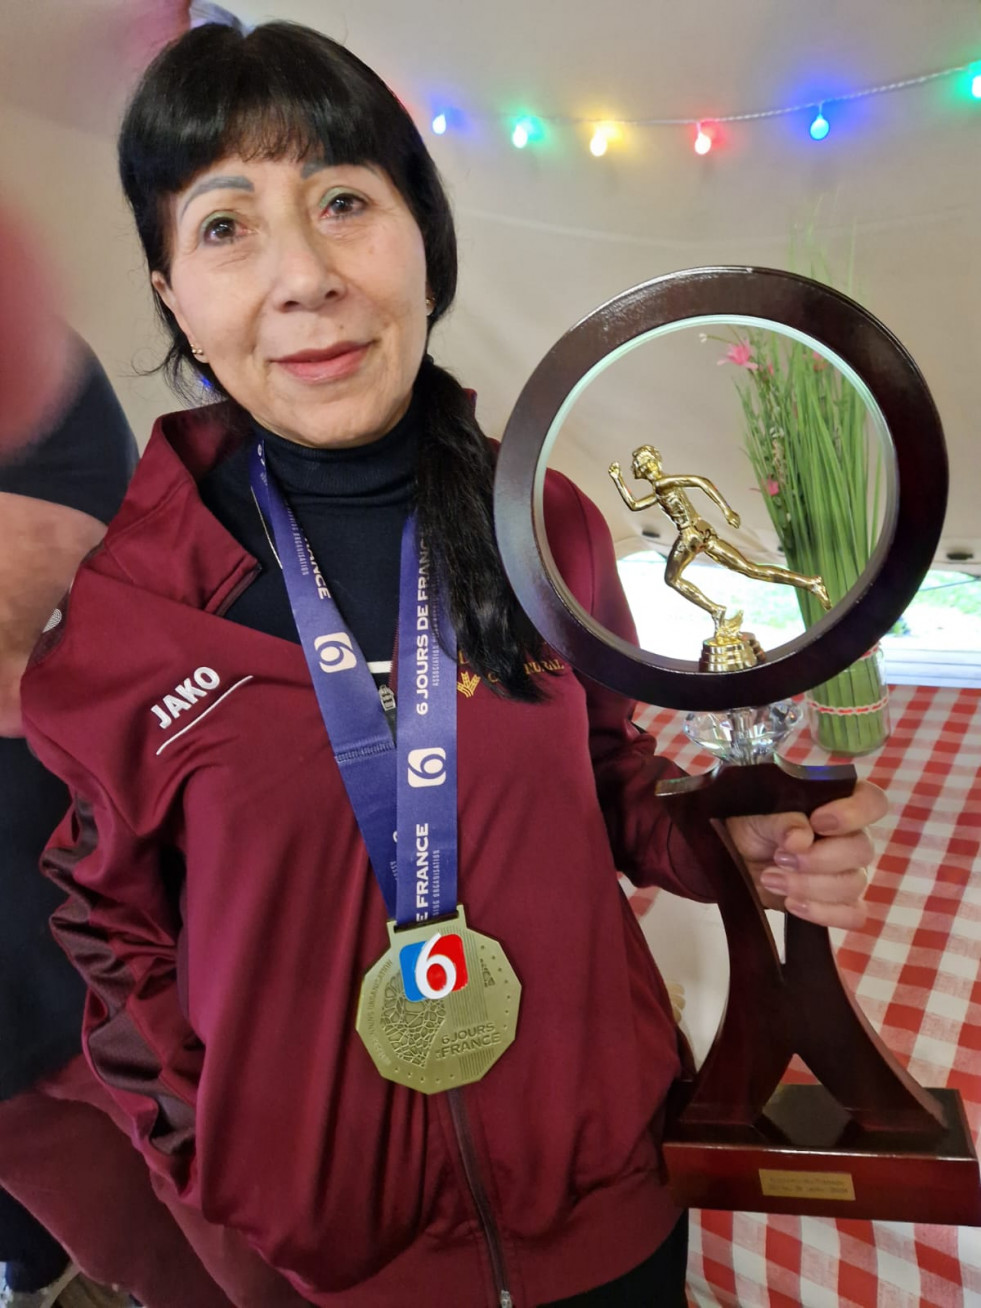 Mª Jose Tomaz Daquino con el trofeo que le acredita vencedora de lpos 6 dias de Francia